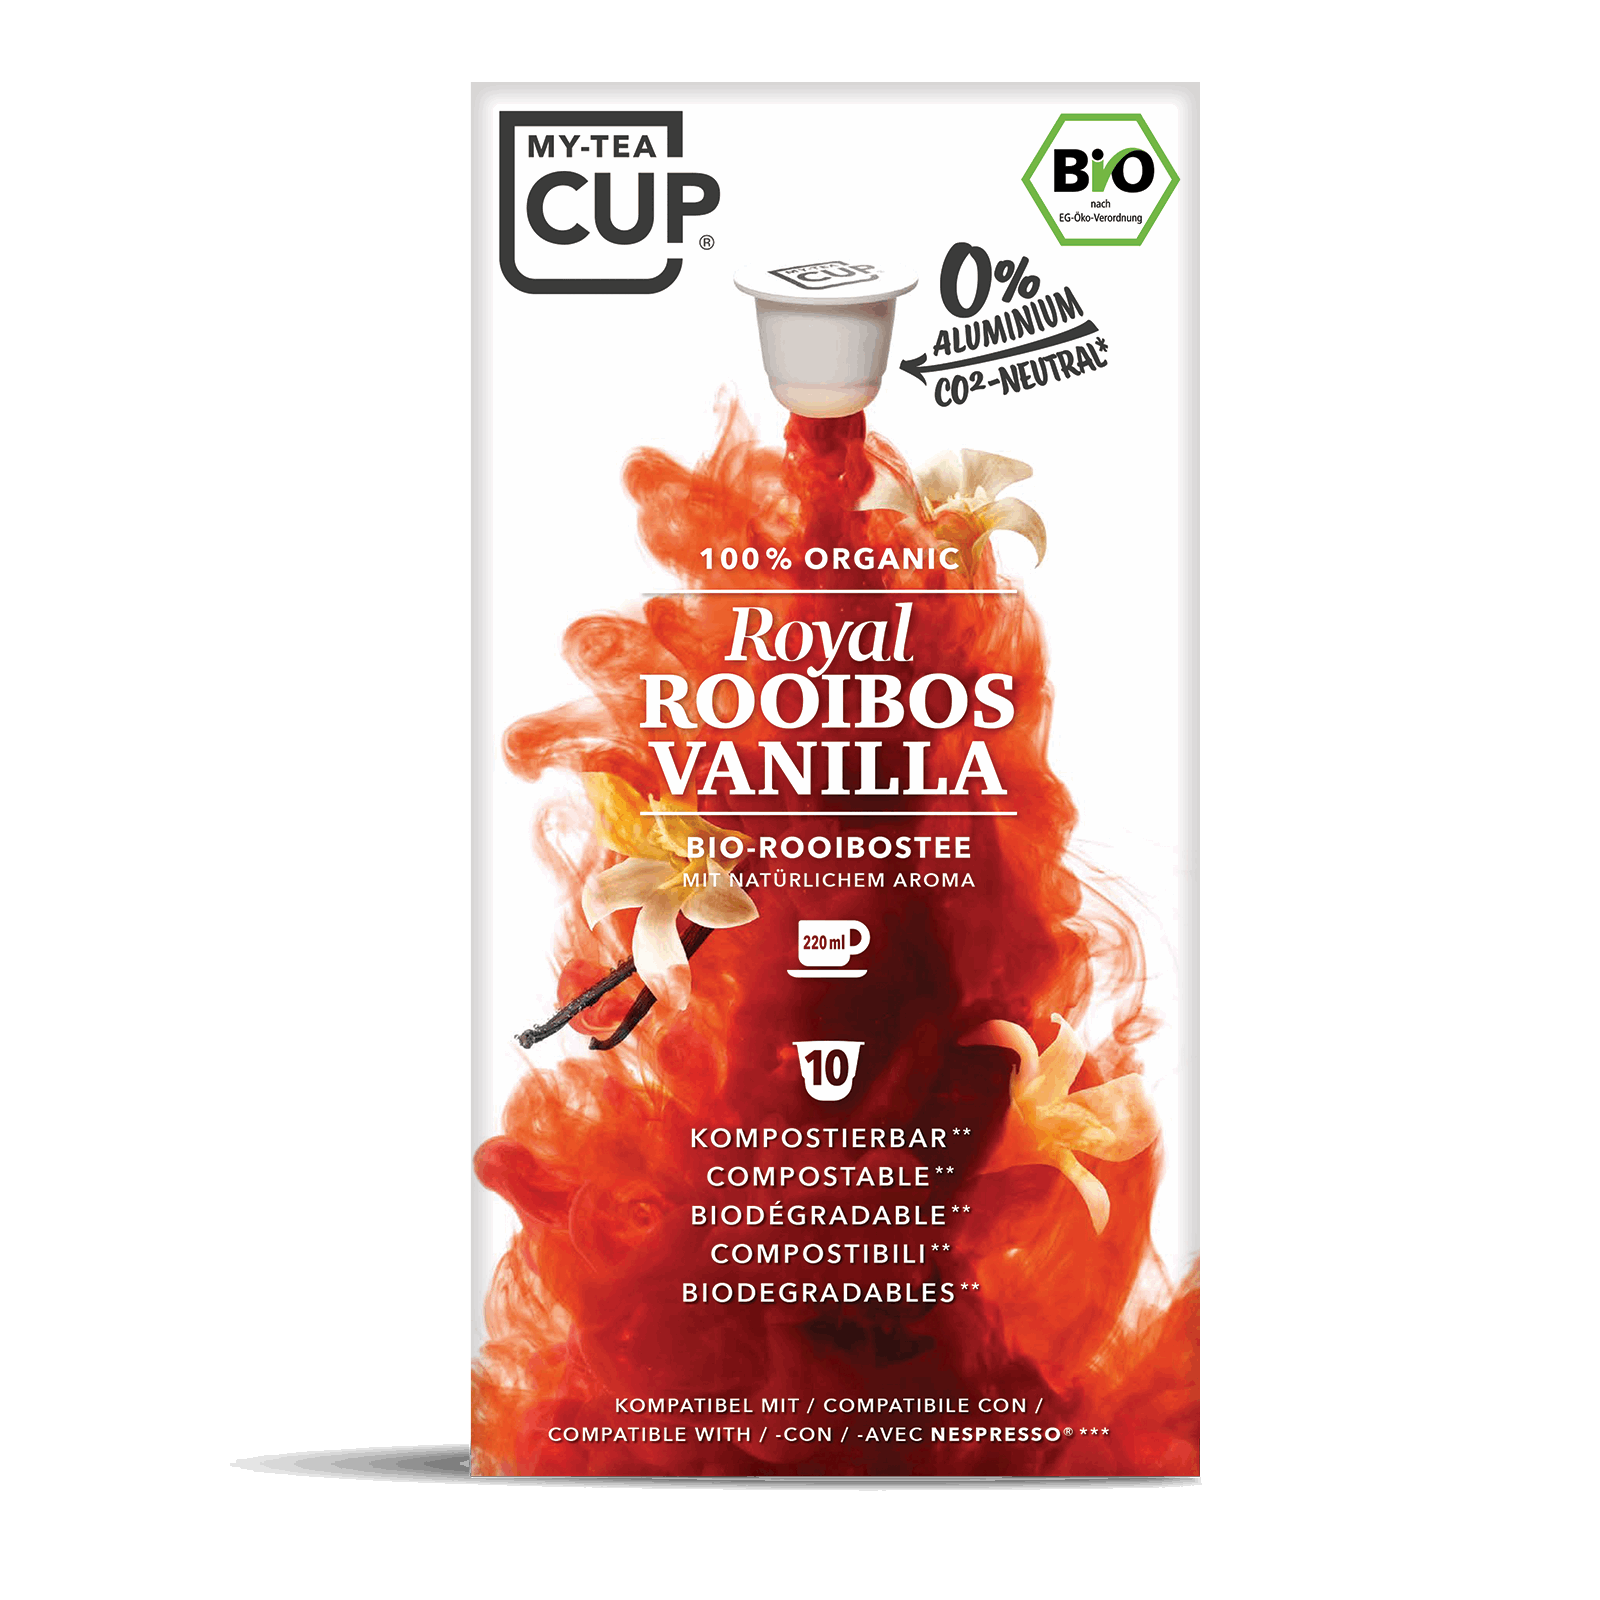 Royal Rooibos Vanilla